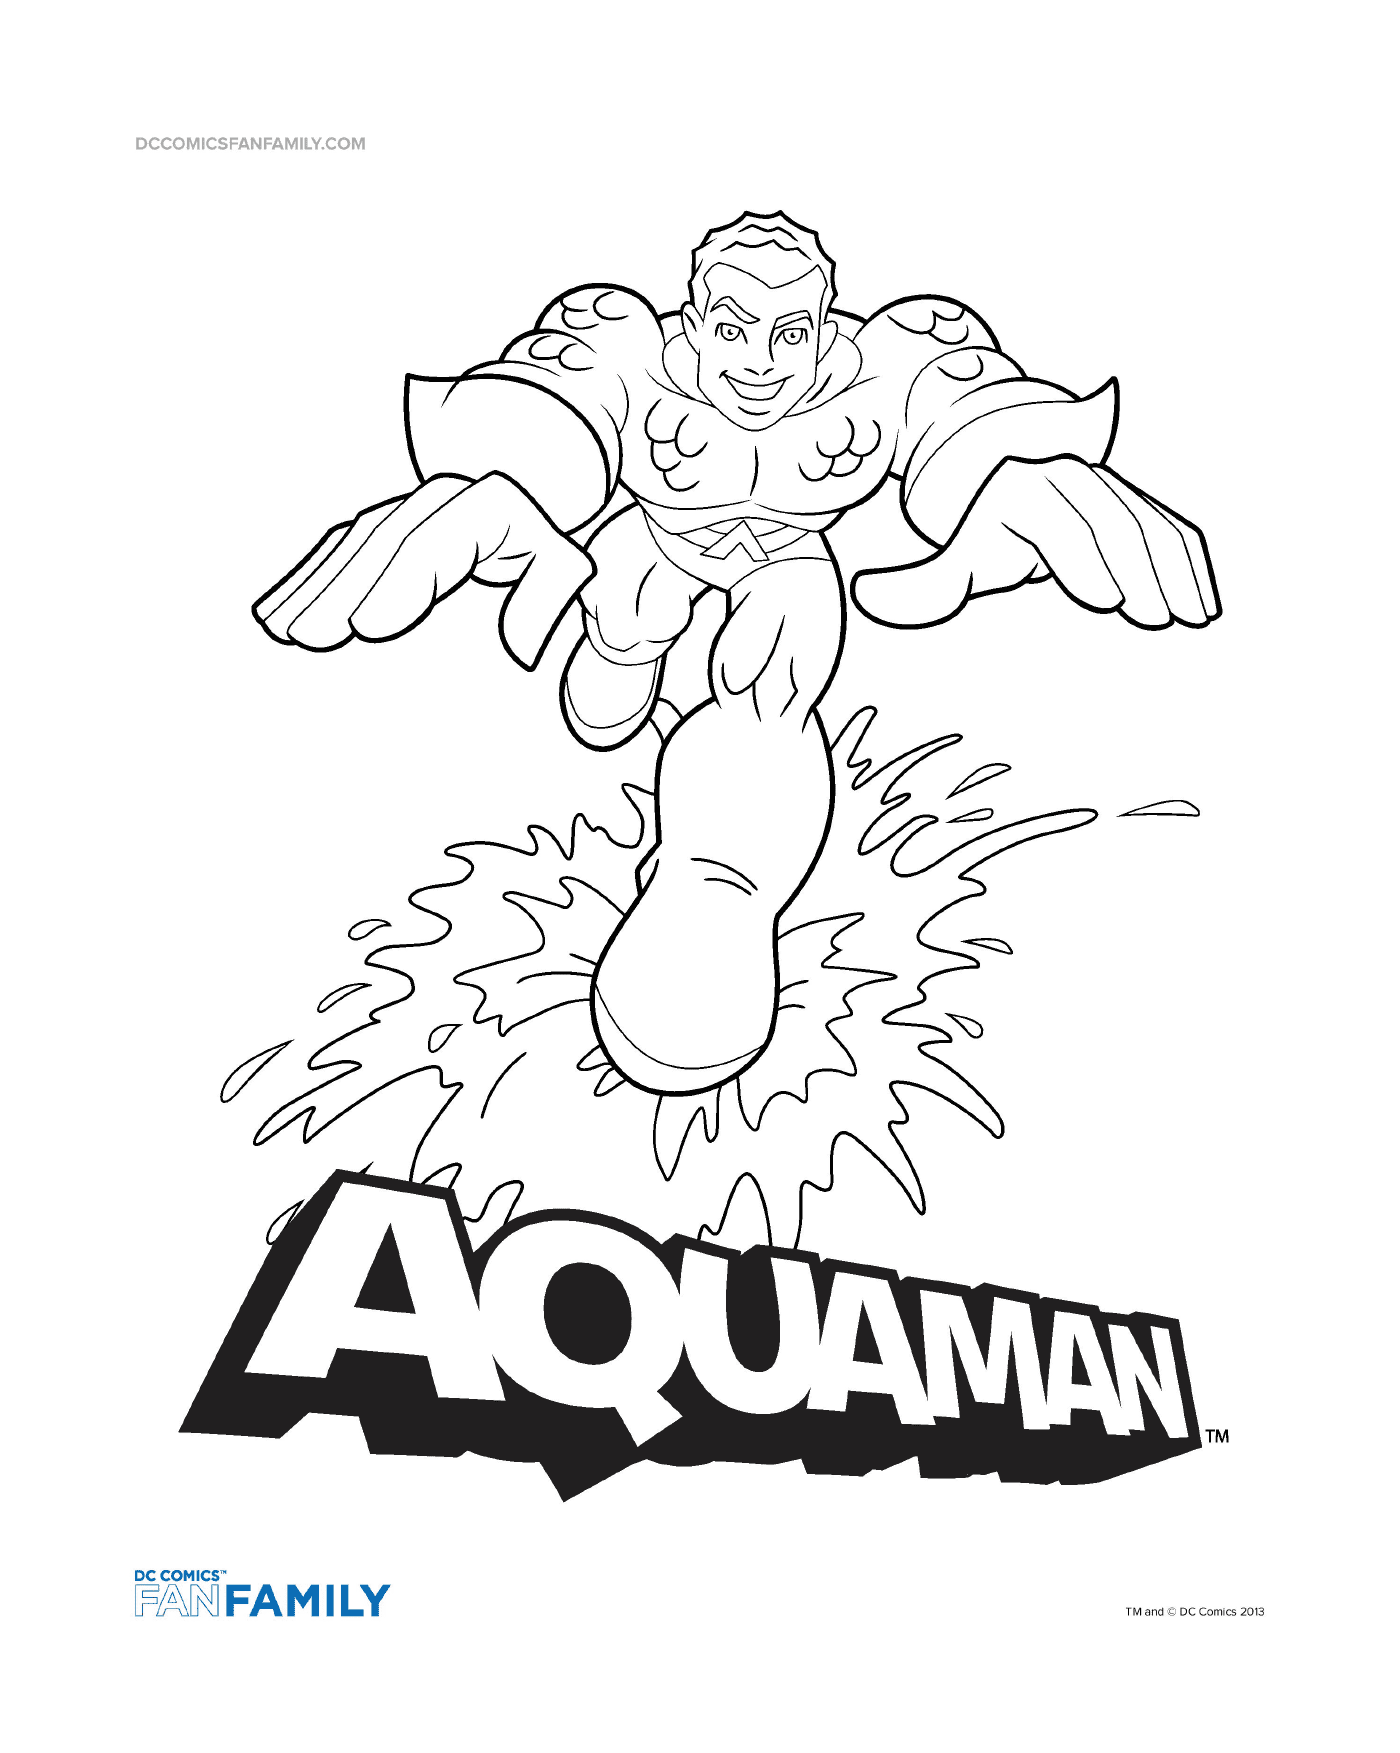   Aquaman héros de DC Comics 